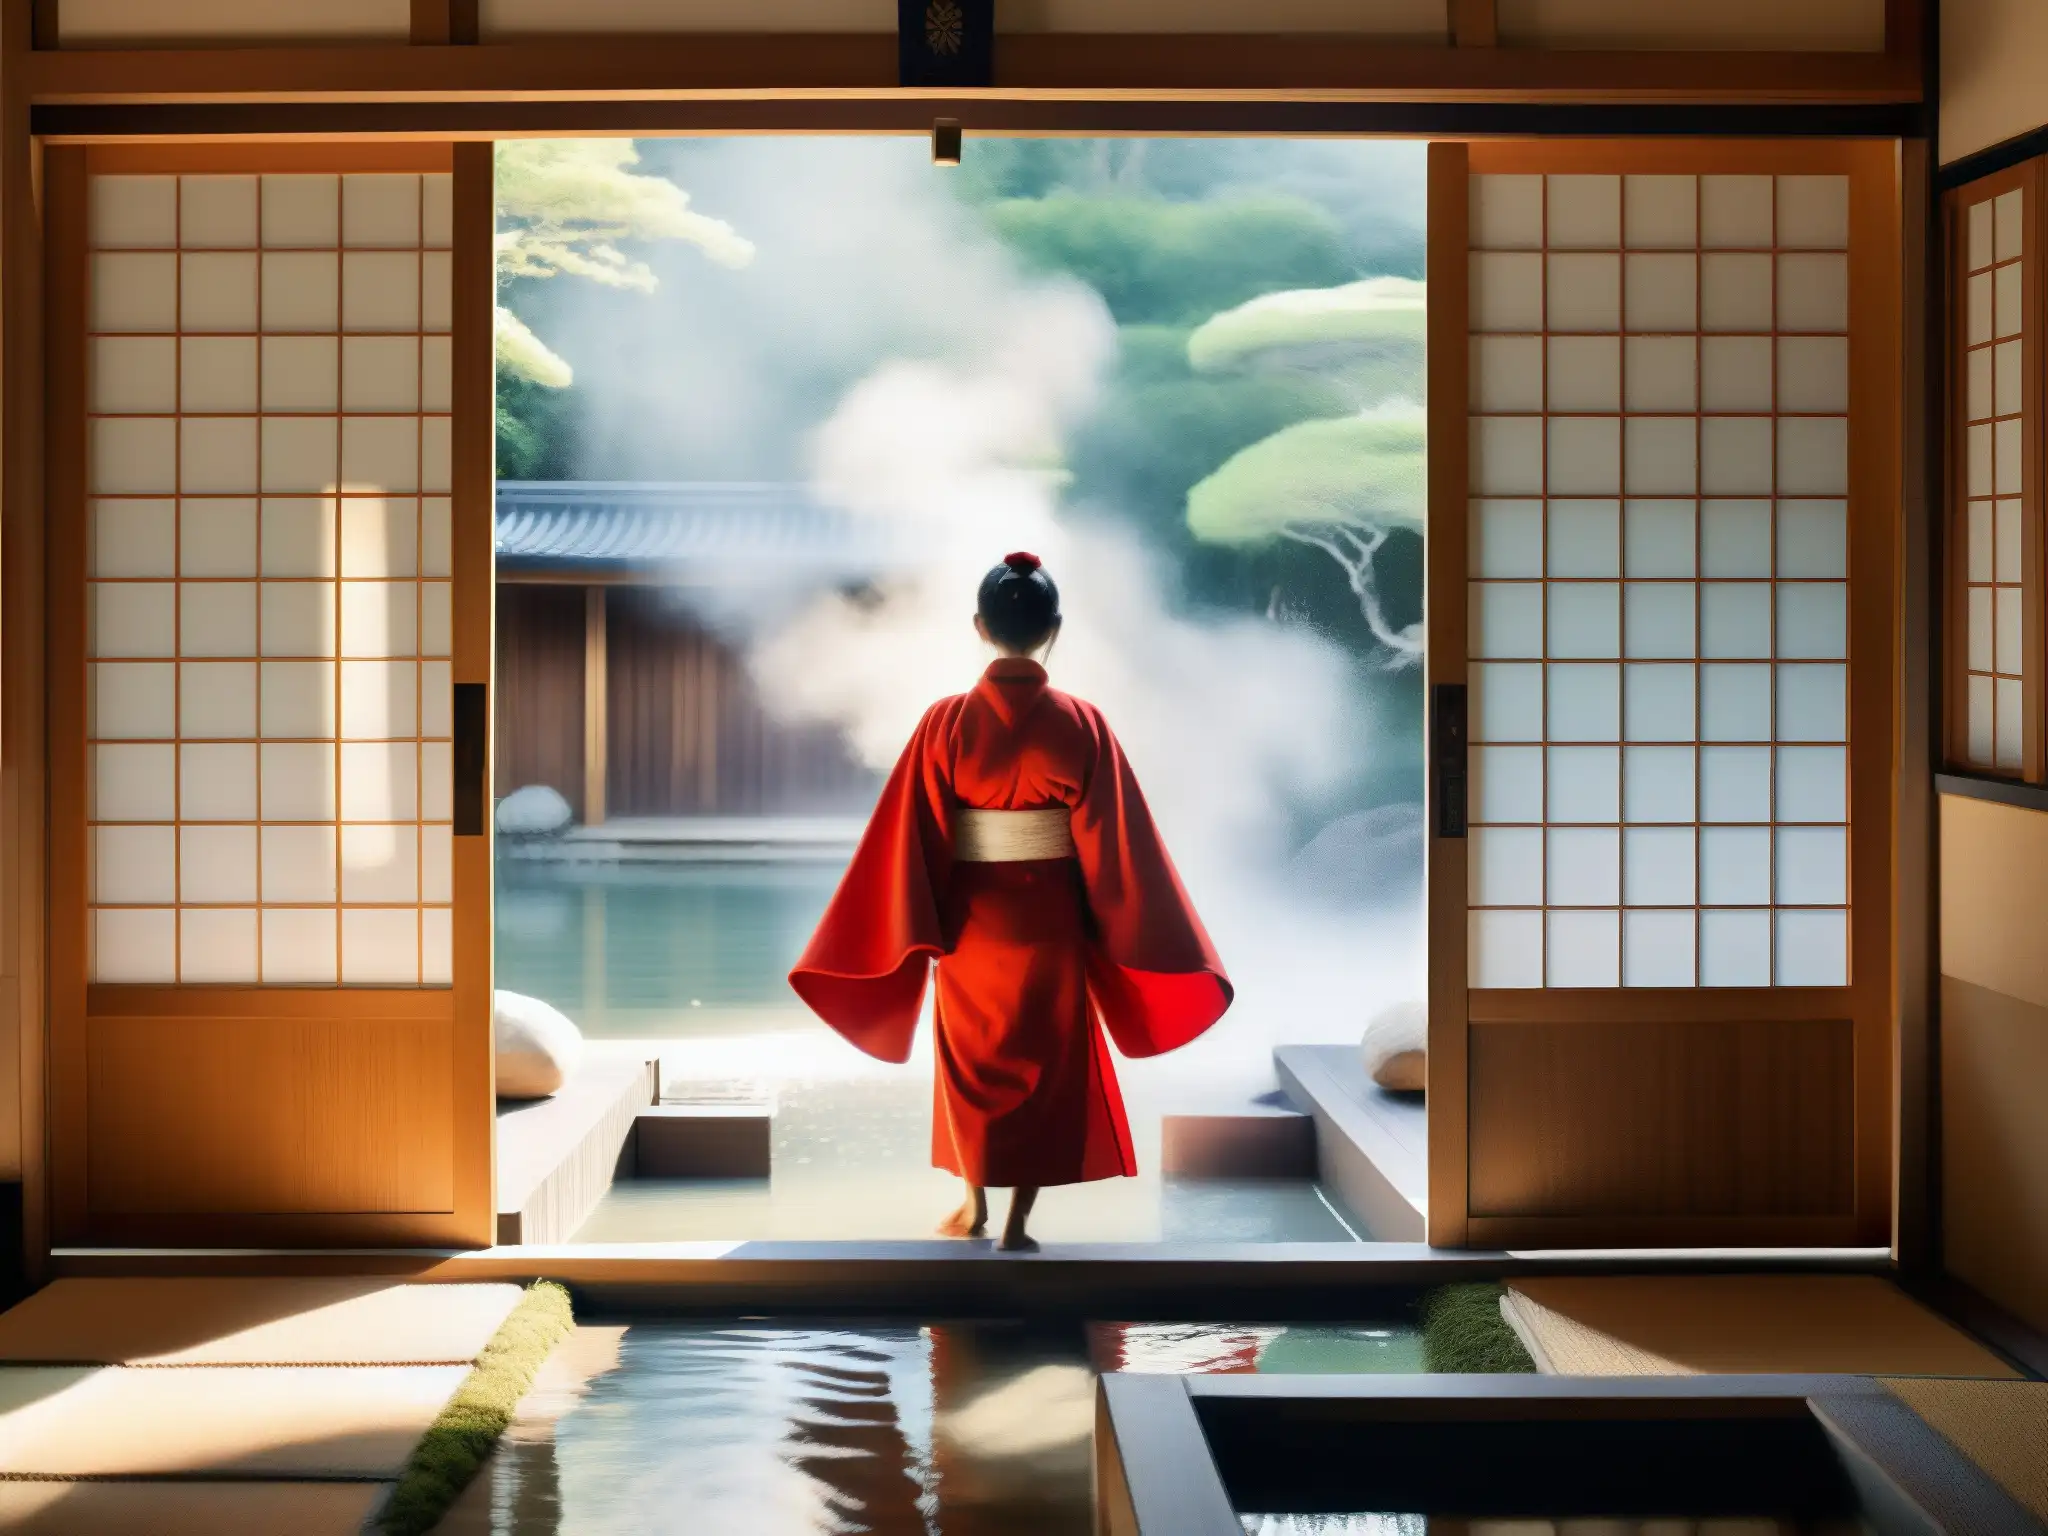 Una imagen de un baño tradicional japonés con elementos de madera y puertas corredizas de papel, iluminado por luz natural suave